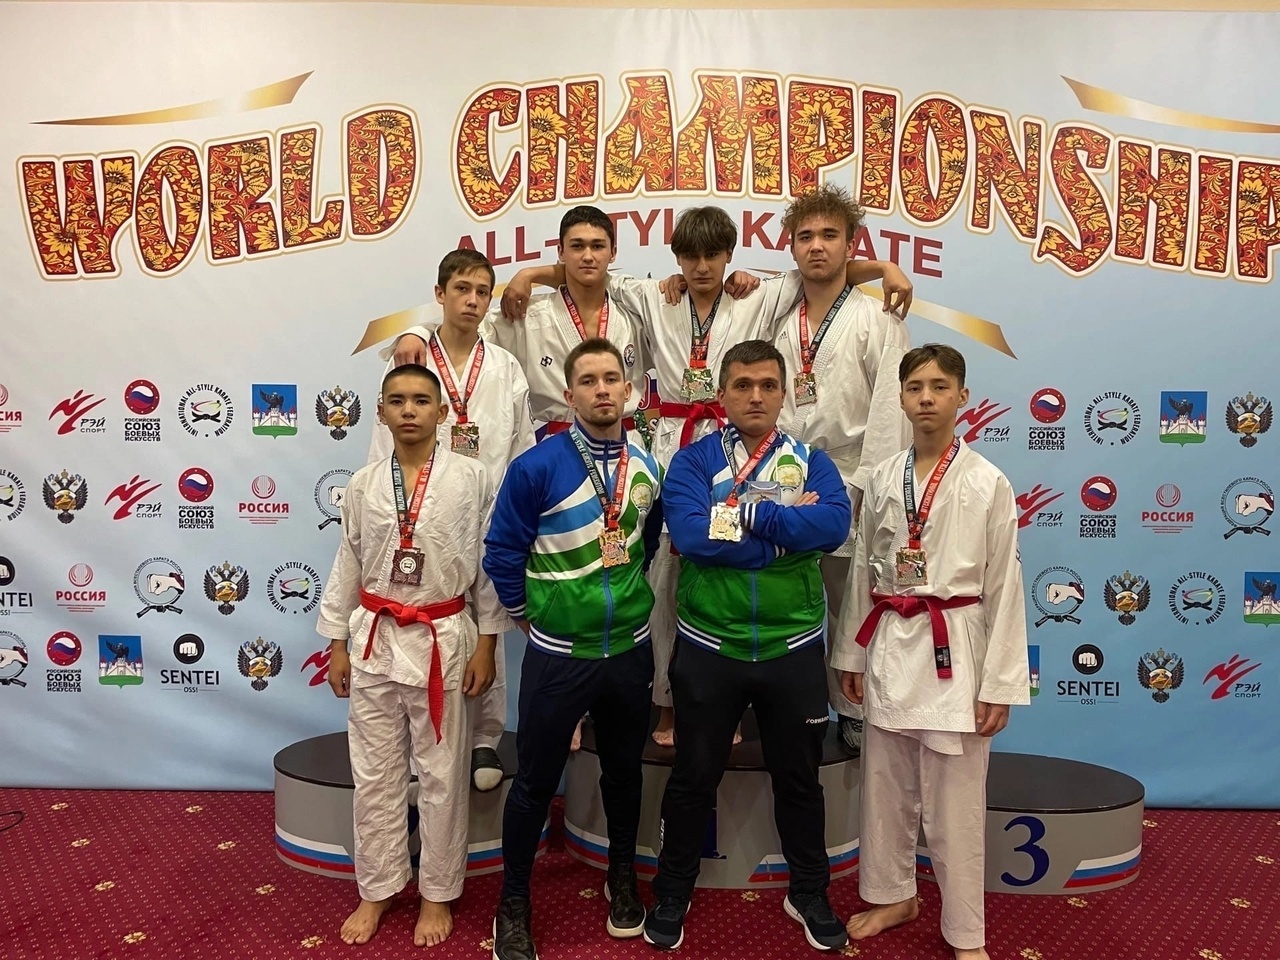 Стерлитамакские спортсмены заняли призовые места в Чемпионате и Первенстве Мира по всестилевому каратэ